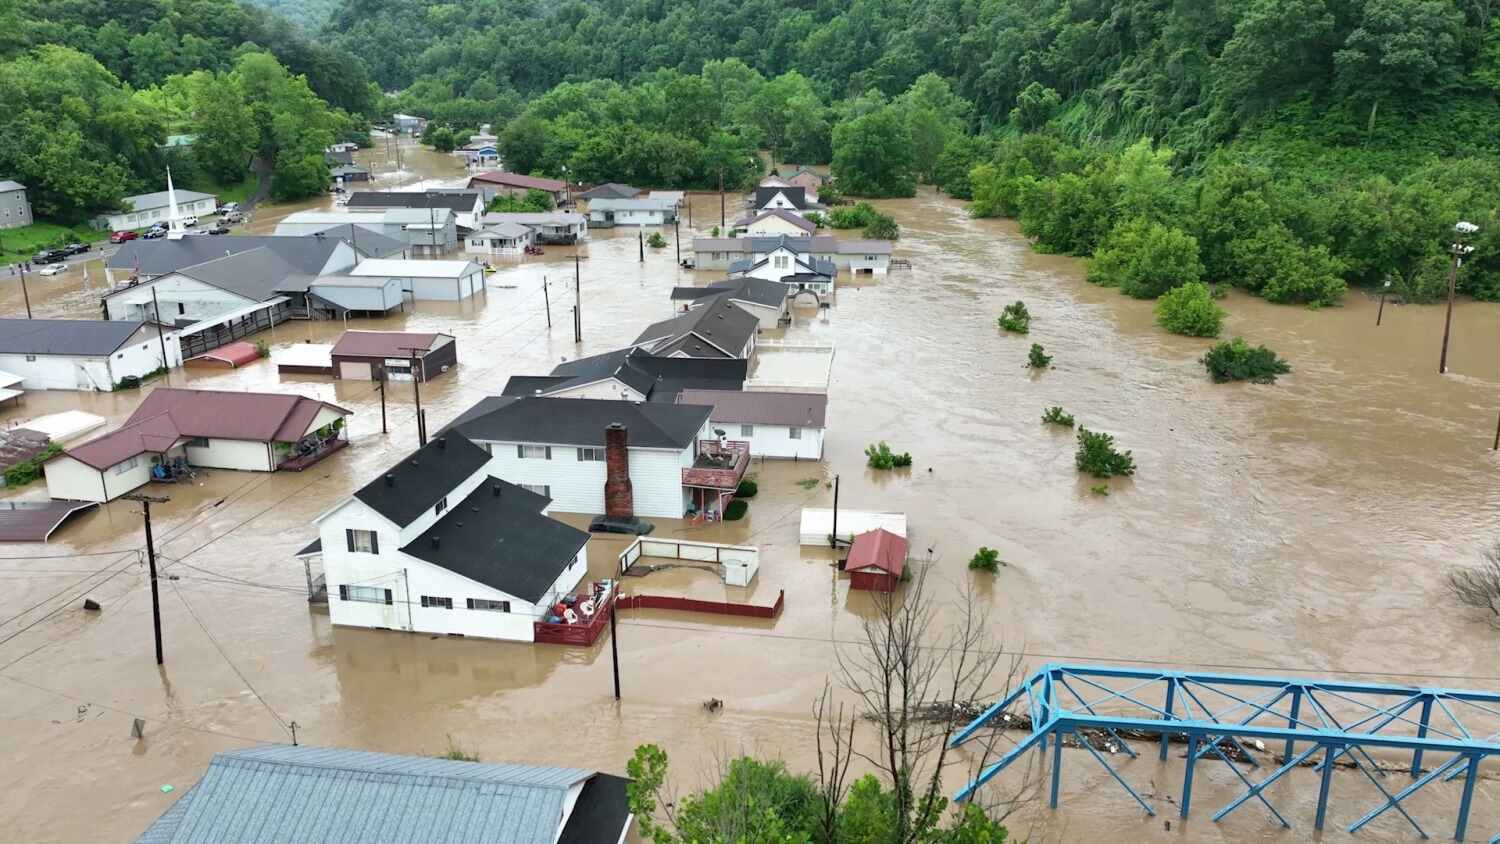 At least 16 dead in flash floods that followed heavy rain in Kentucky